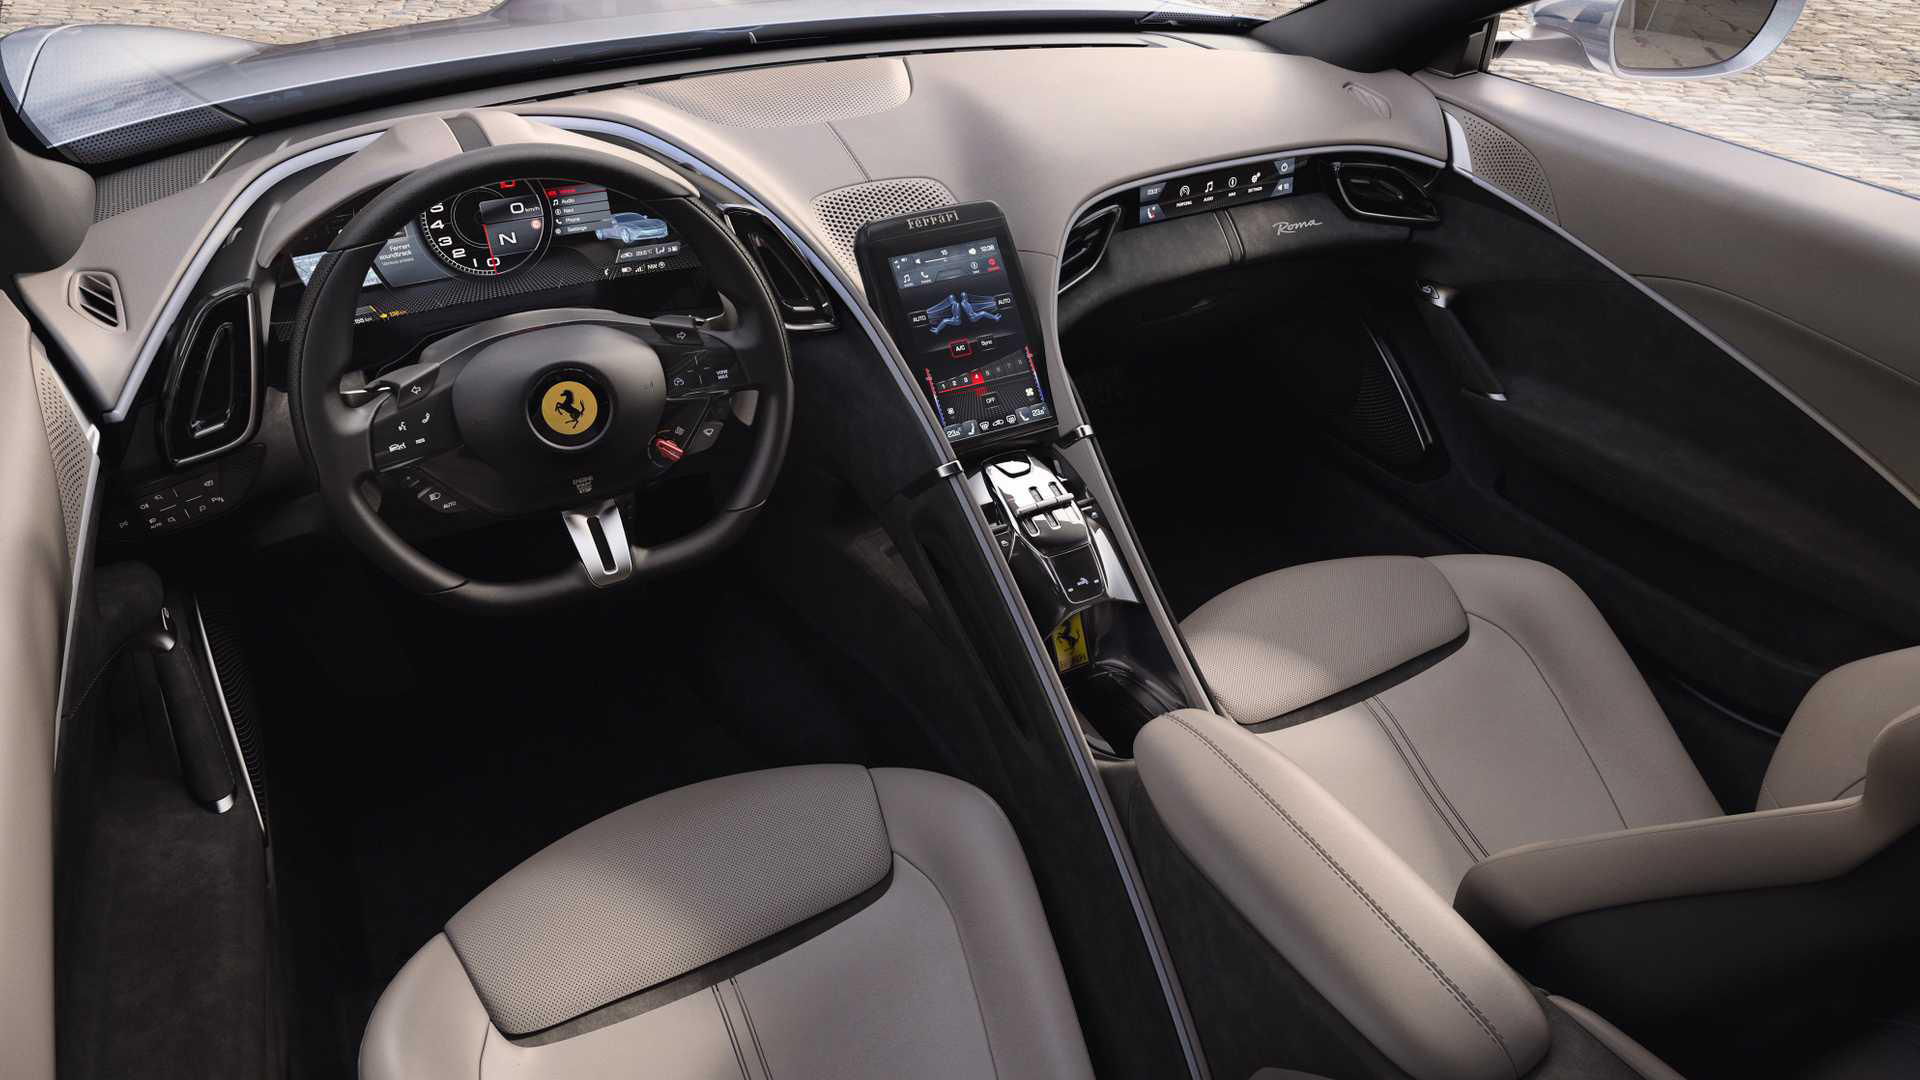 Ferrari создала переднемоторное купе с ретро-дизайном